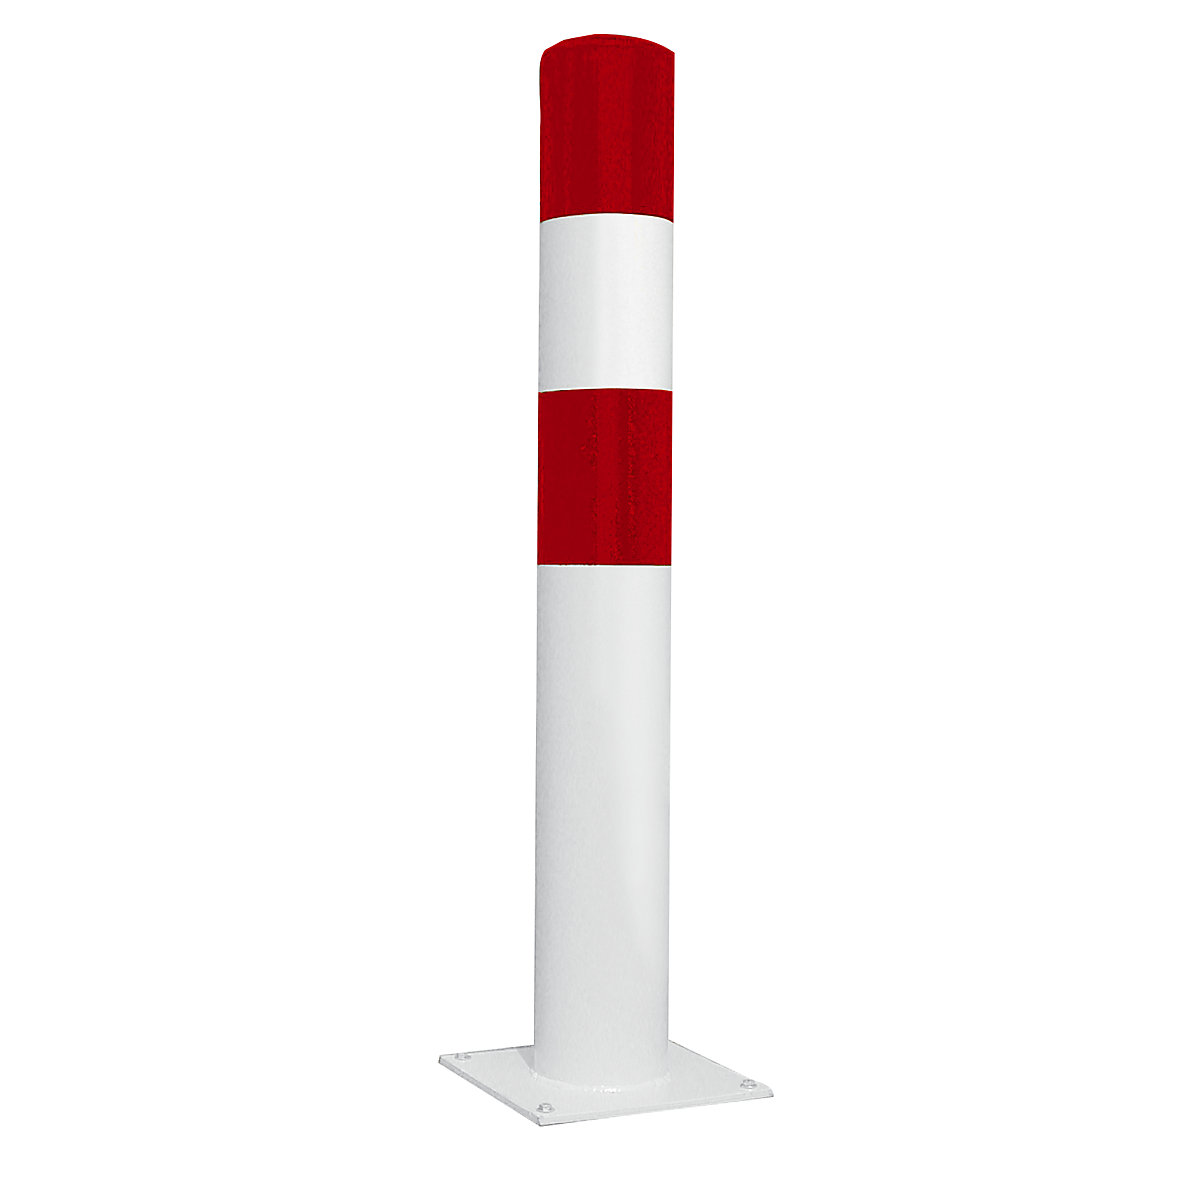 Odbojni zaščitni stebrič, velikost L, rdeče / bele barve, za pritrditev z vložki-1